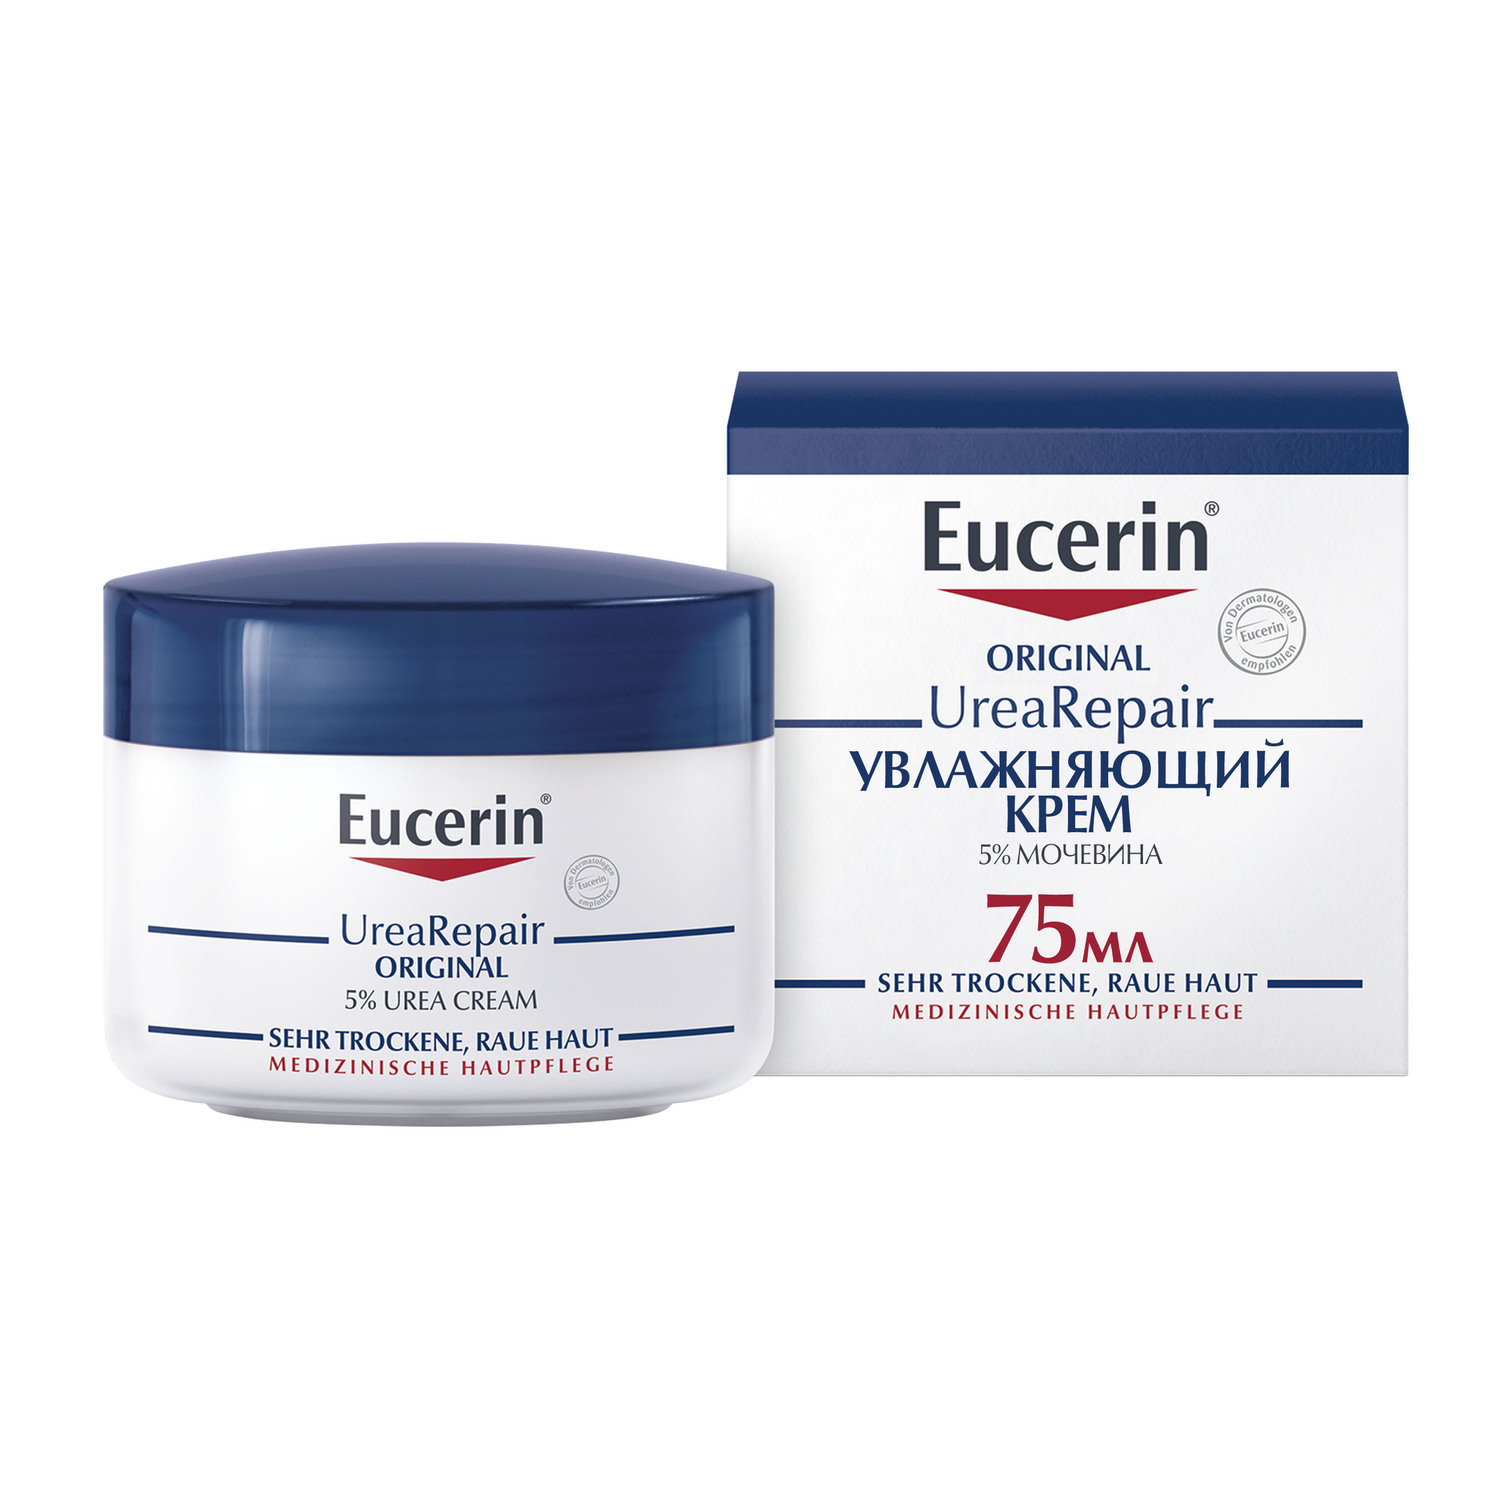 Eucerin Увлажняющий крем с 5% мочевиной, 75 мл (Eucerin, Ure